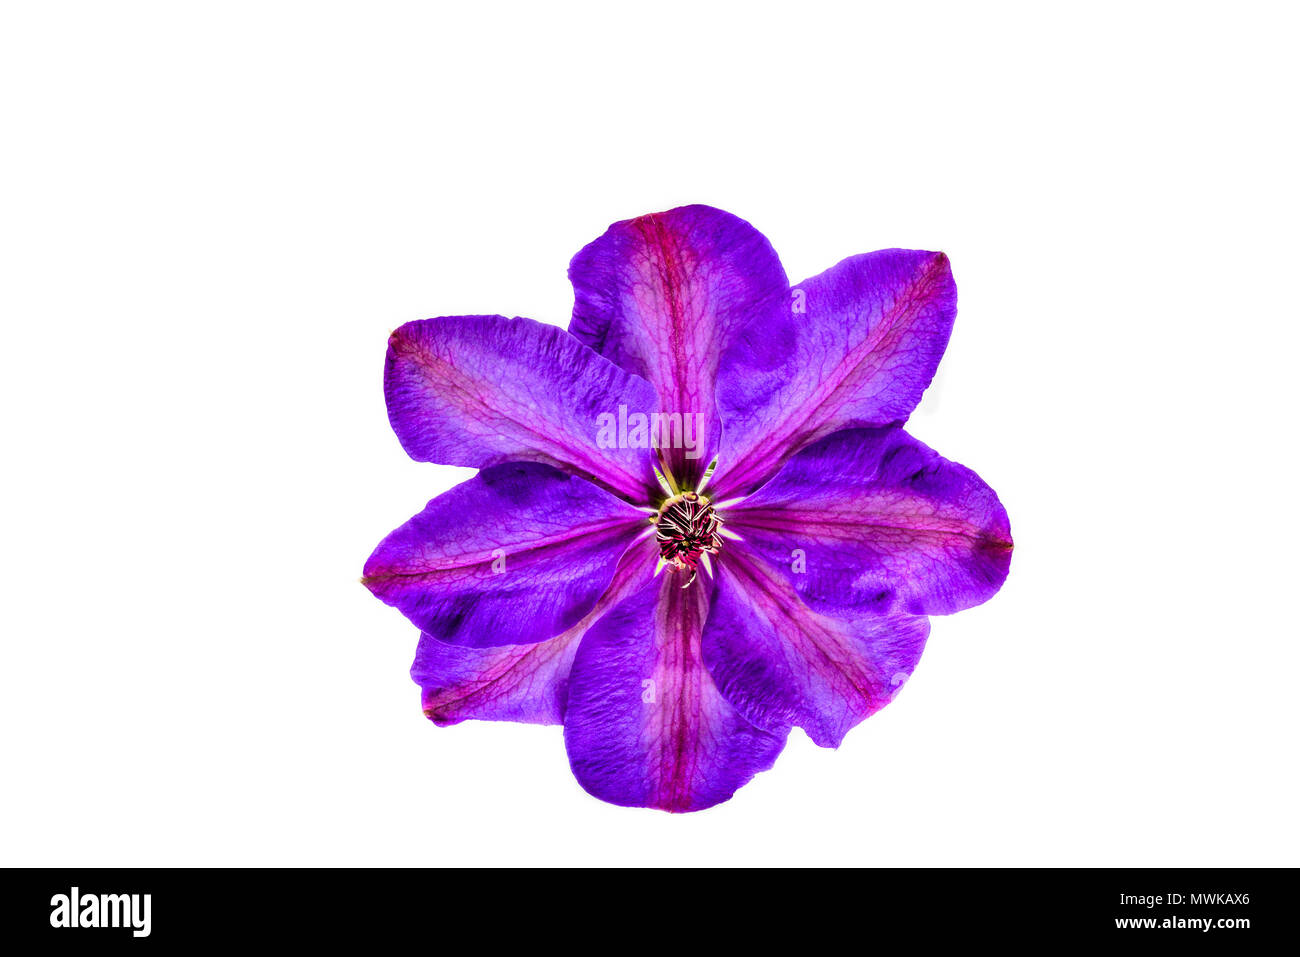 Acht Blütenblatt violett gefärbt Blume von einem Clematis Elsa Spath Kletterpflanze. Stockfoto